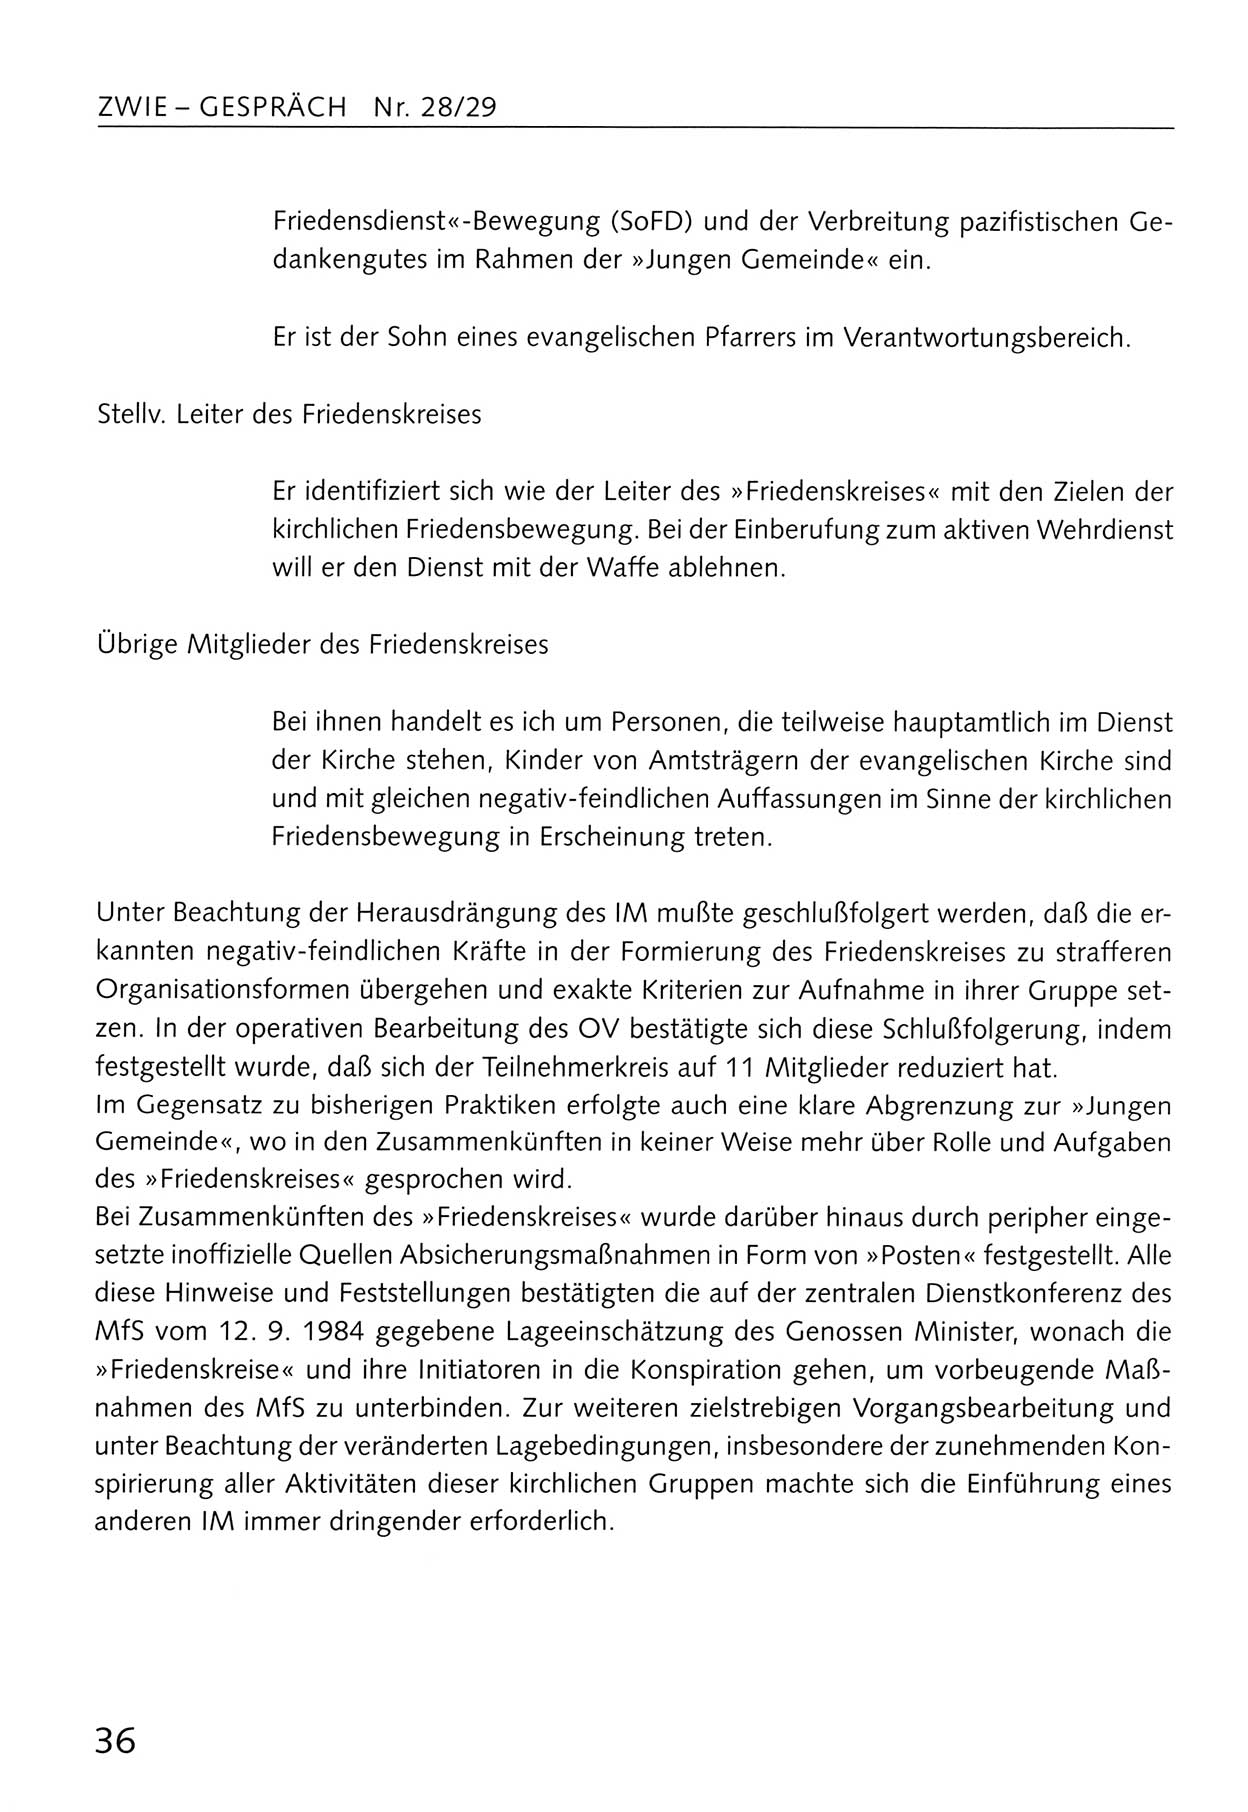 Zwie-Gespräch, Beiträge zum Umgang mit der Staatssicherheits-Vergangenheit [Deutsche Demokratische Republik (DDR)], Ausgabe Nr. 28/29, Berlin 1995, Seite 36 (Zwie-Gespr. Ausg. 28/29 1995, S. 36)